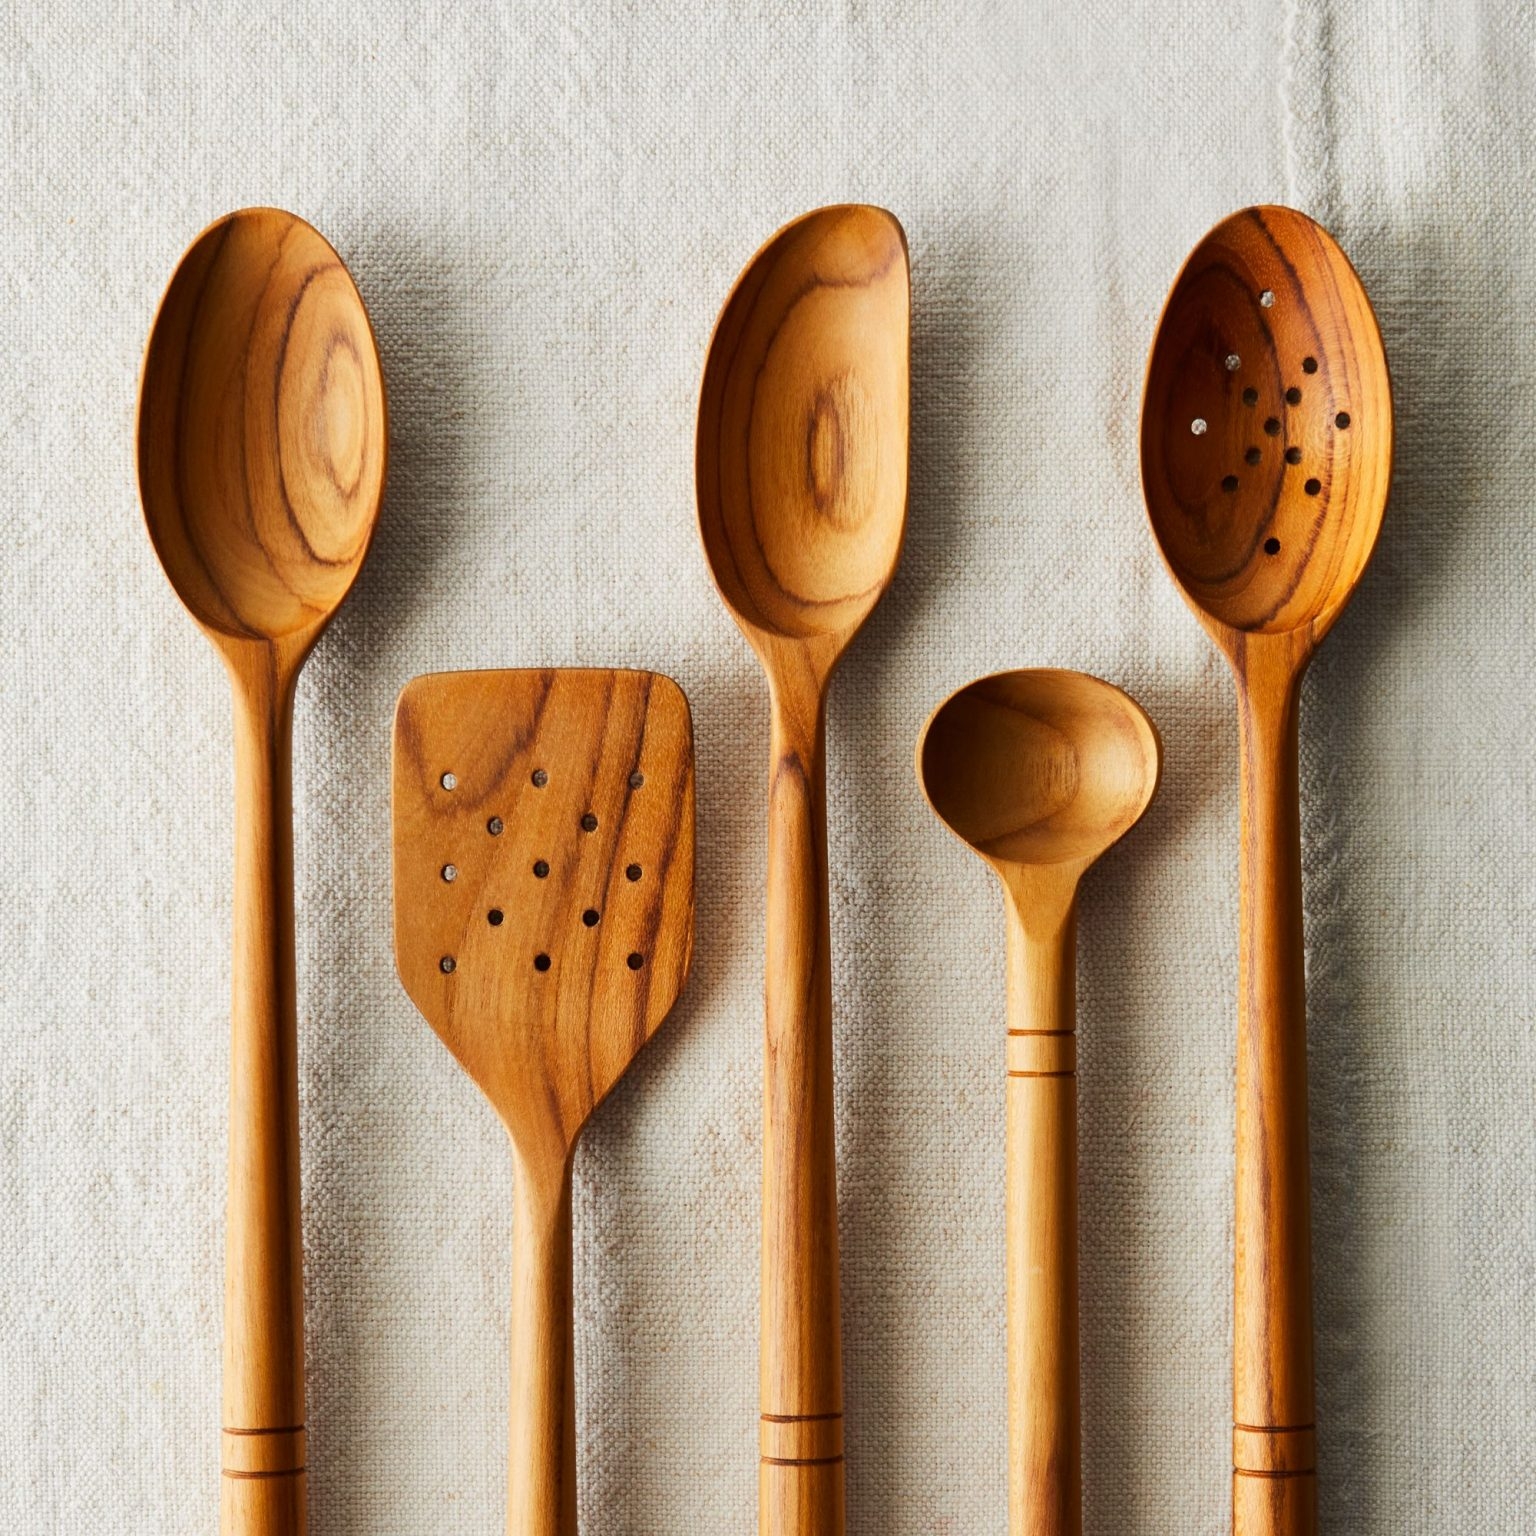 Wooden spoon. Деревянная ложка. Деревянная кухонная утварь. Ложка кухонная деревянная. Плоская деревянная ложка.